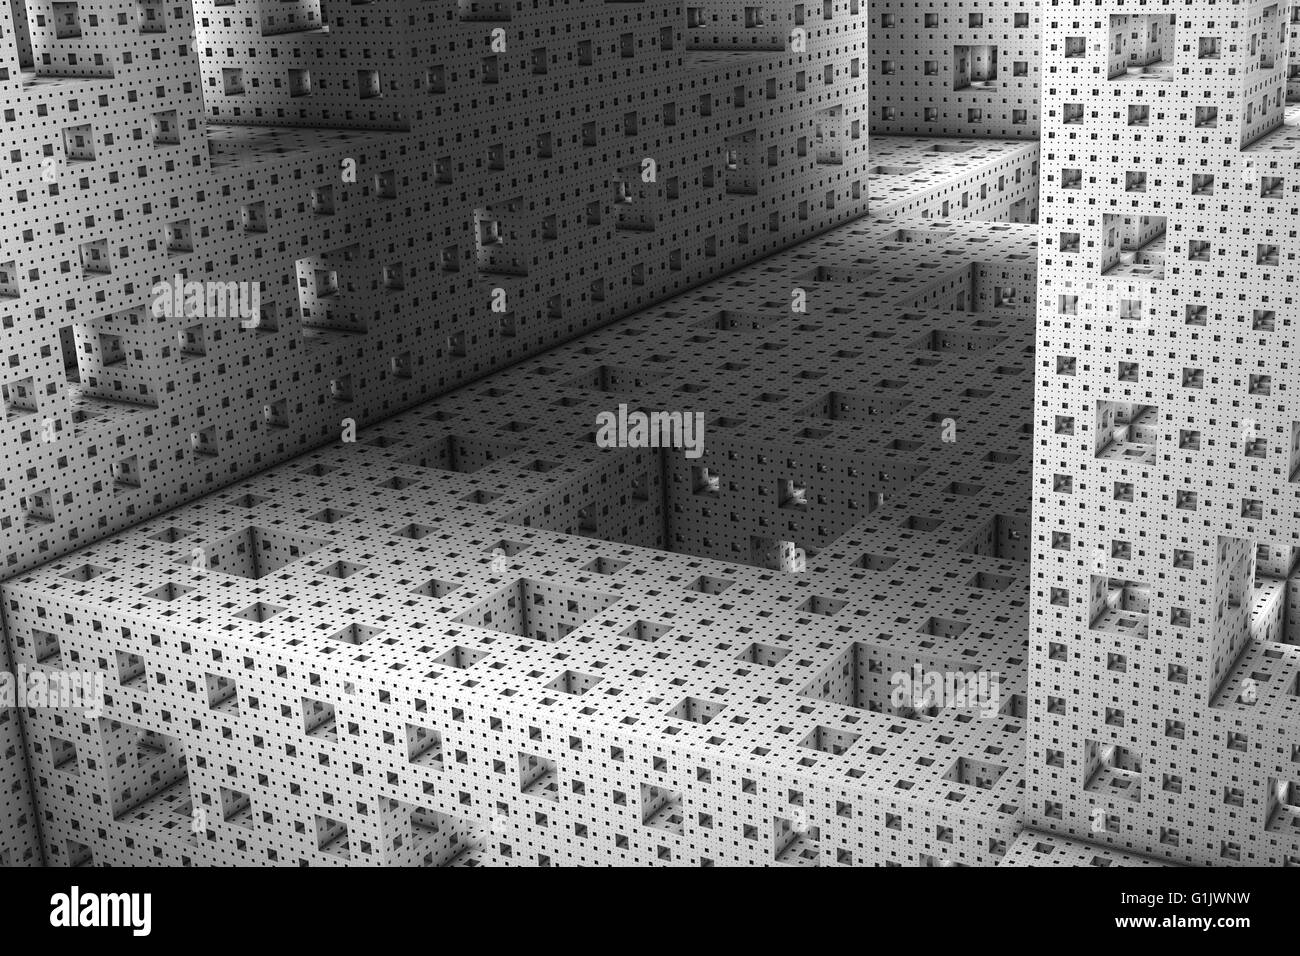 Eine bizarre Hintergrund durch das Innenleben eines Menger-Schwamm  Stockfotografie - Alamy